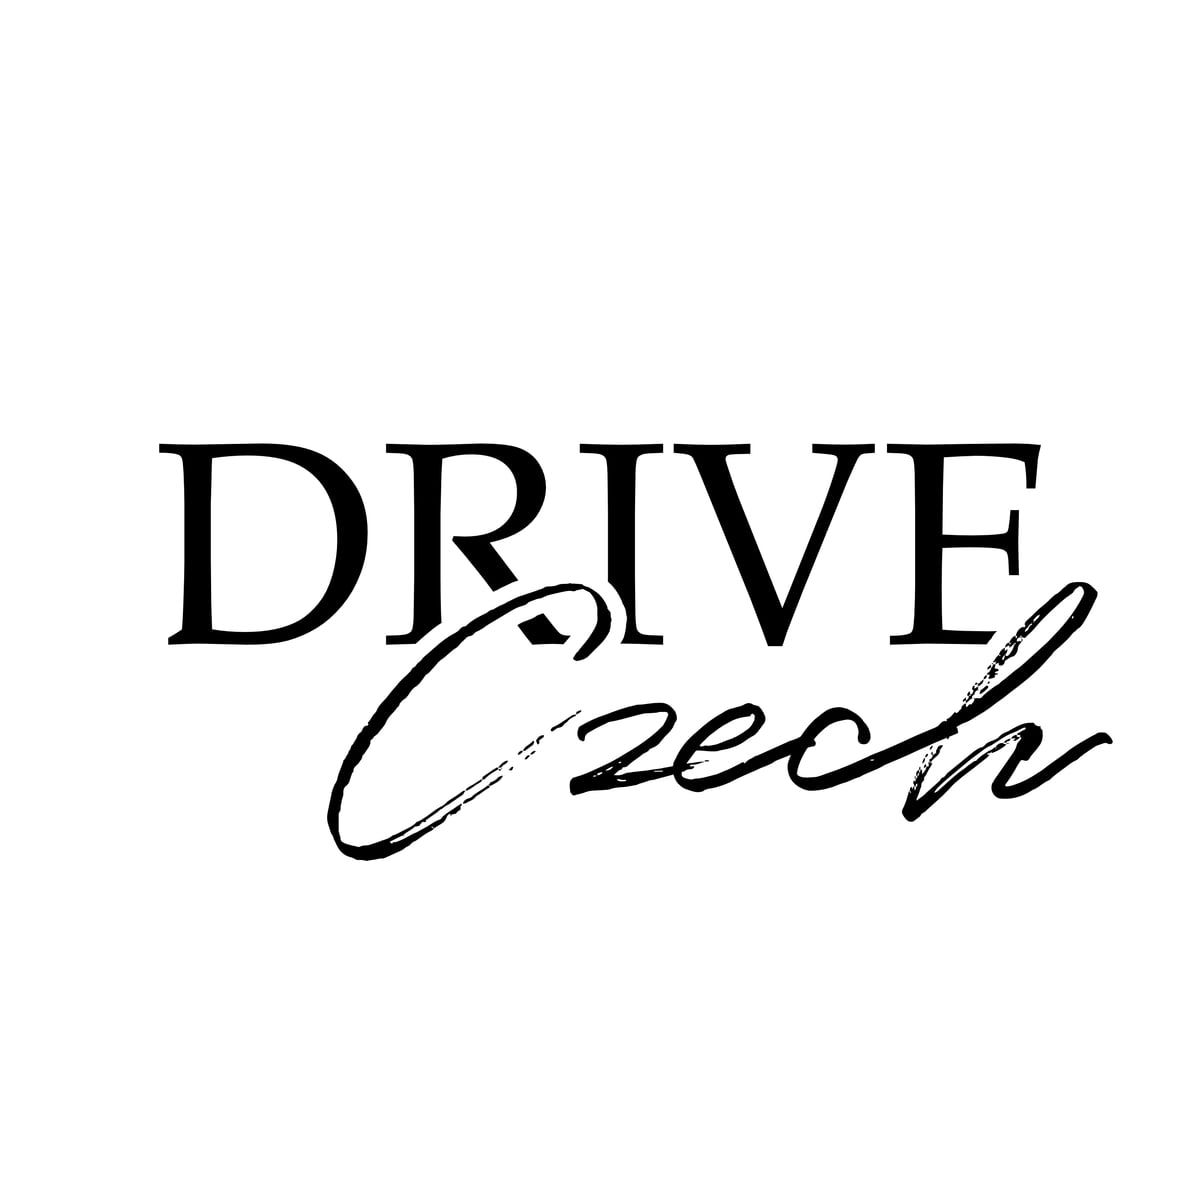 Driveczech logo